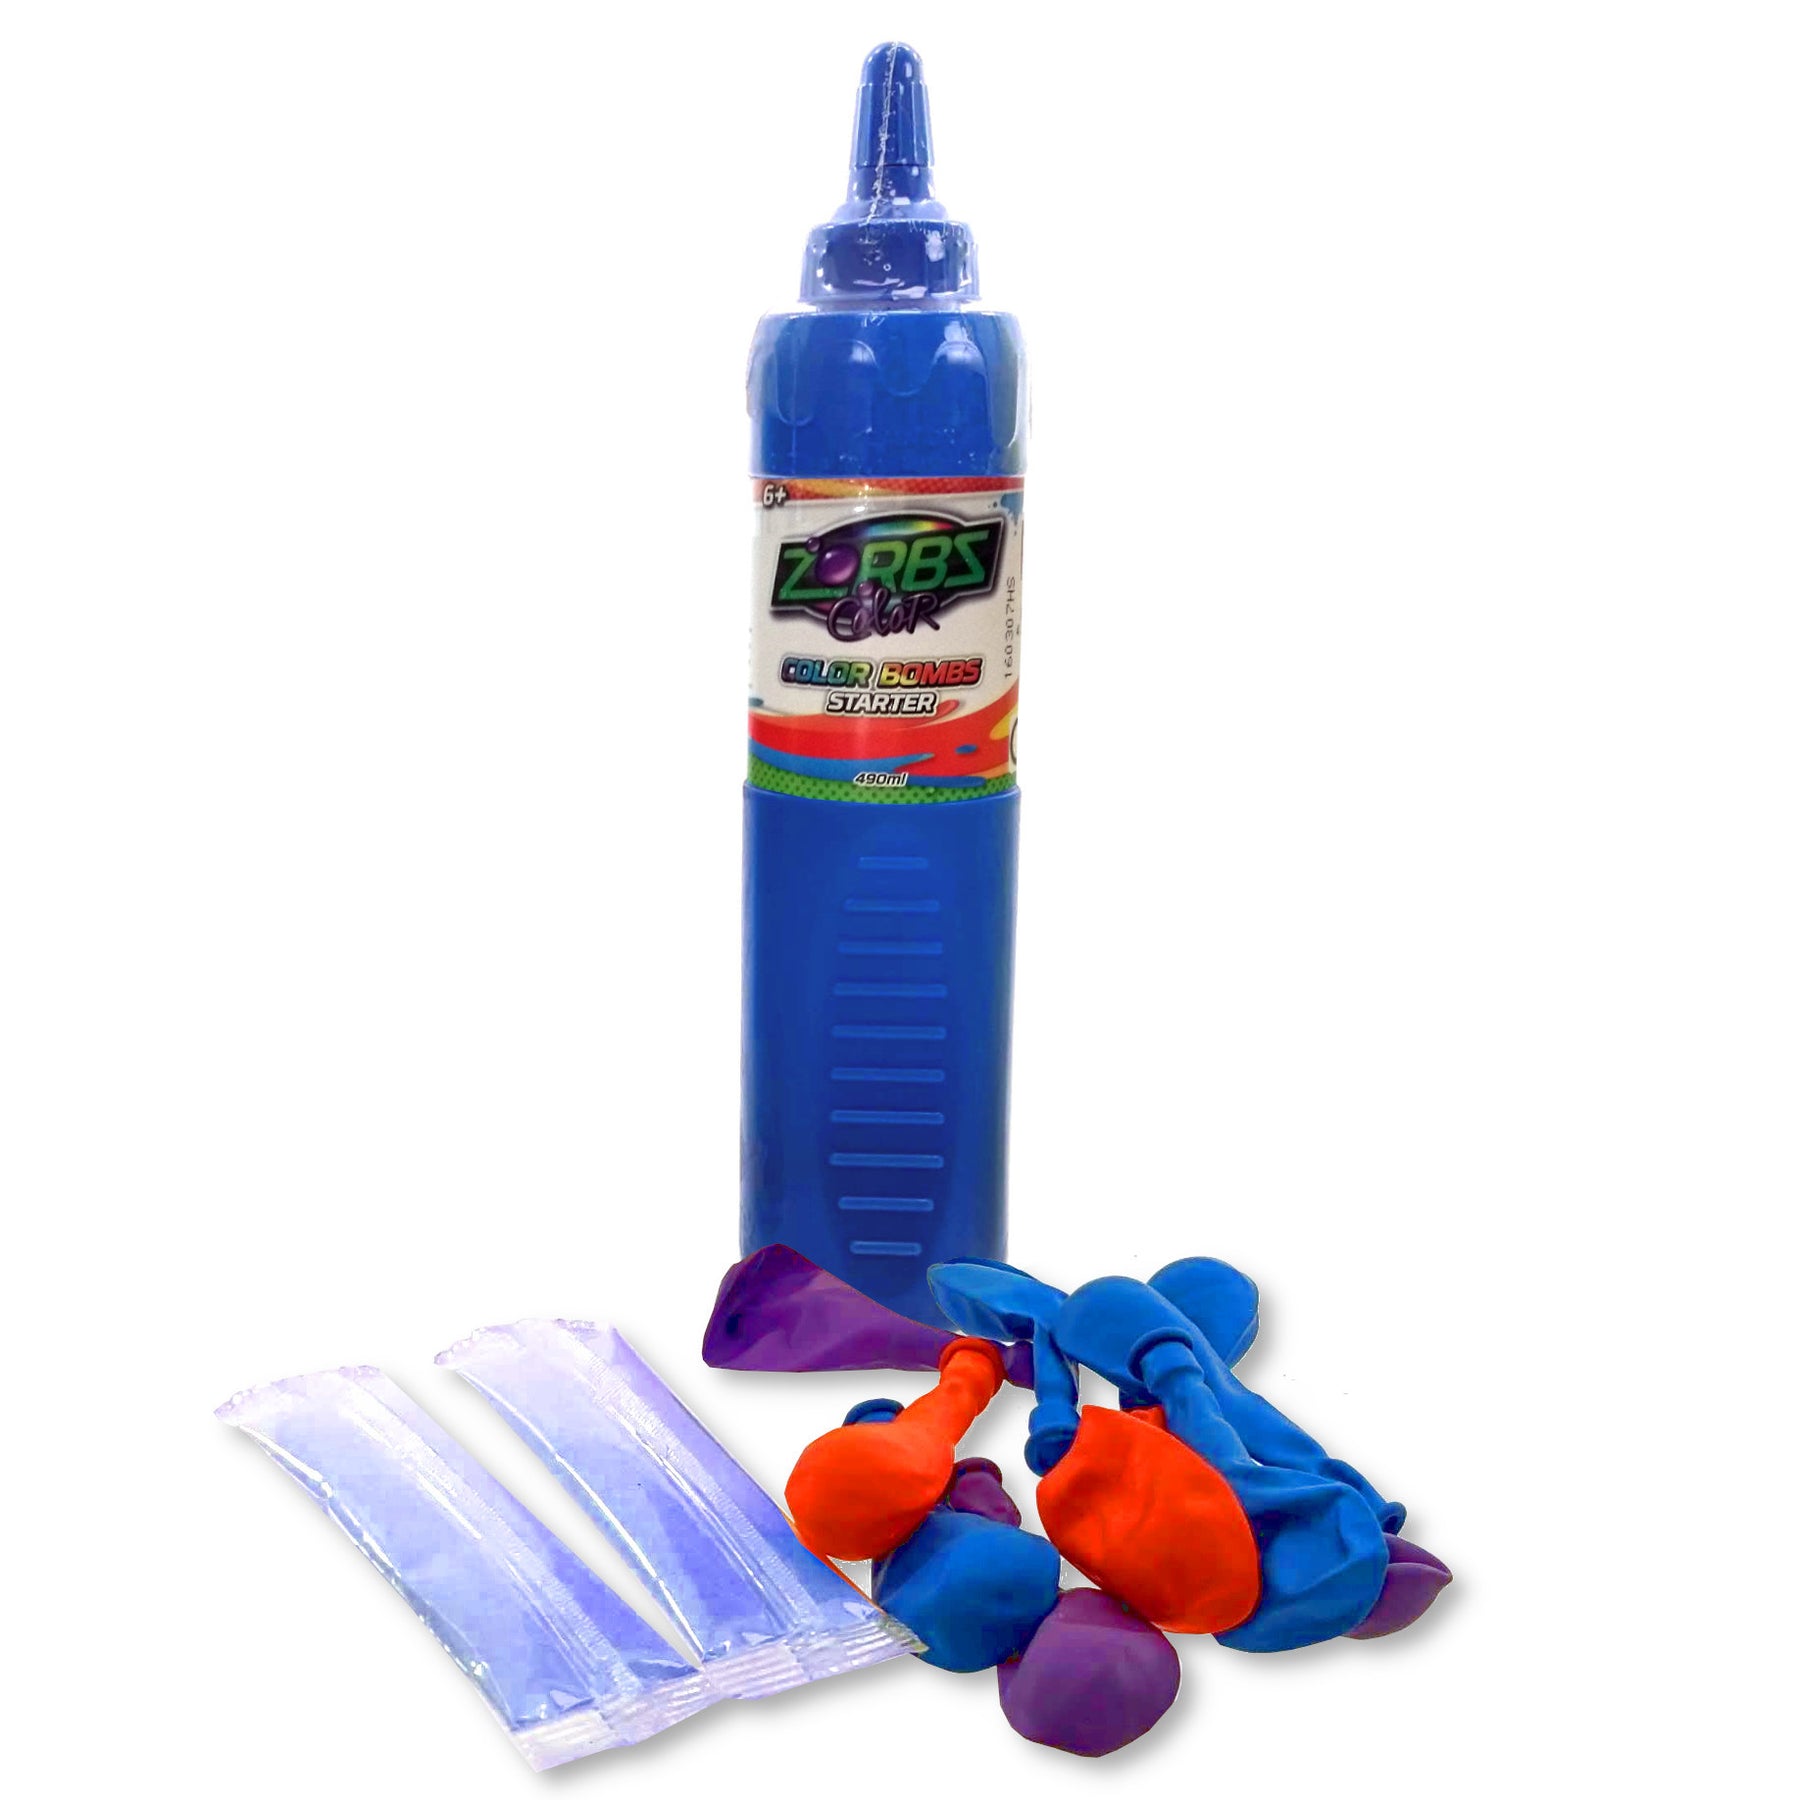 Zorbz Farb-Wasserballon Starter Set